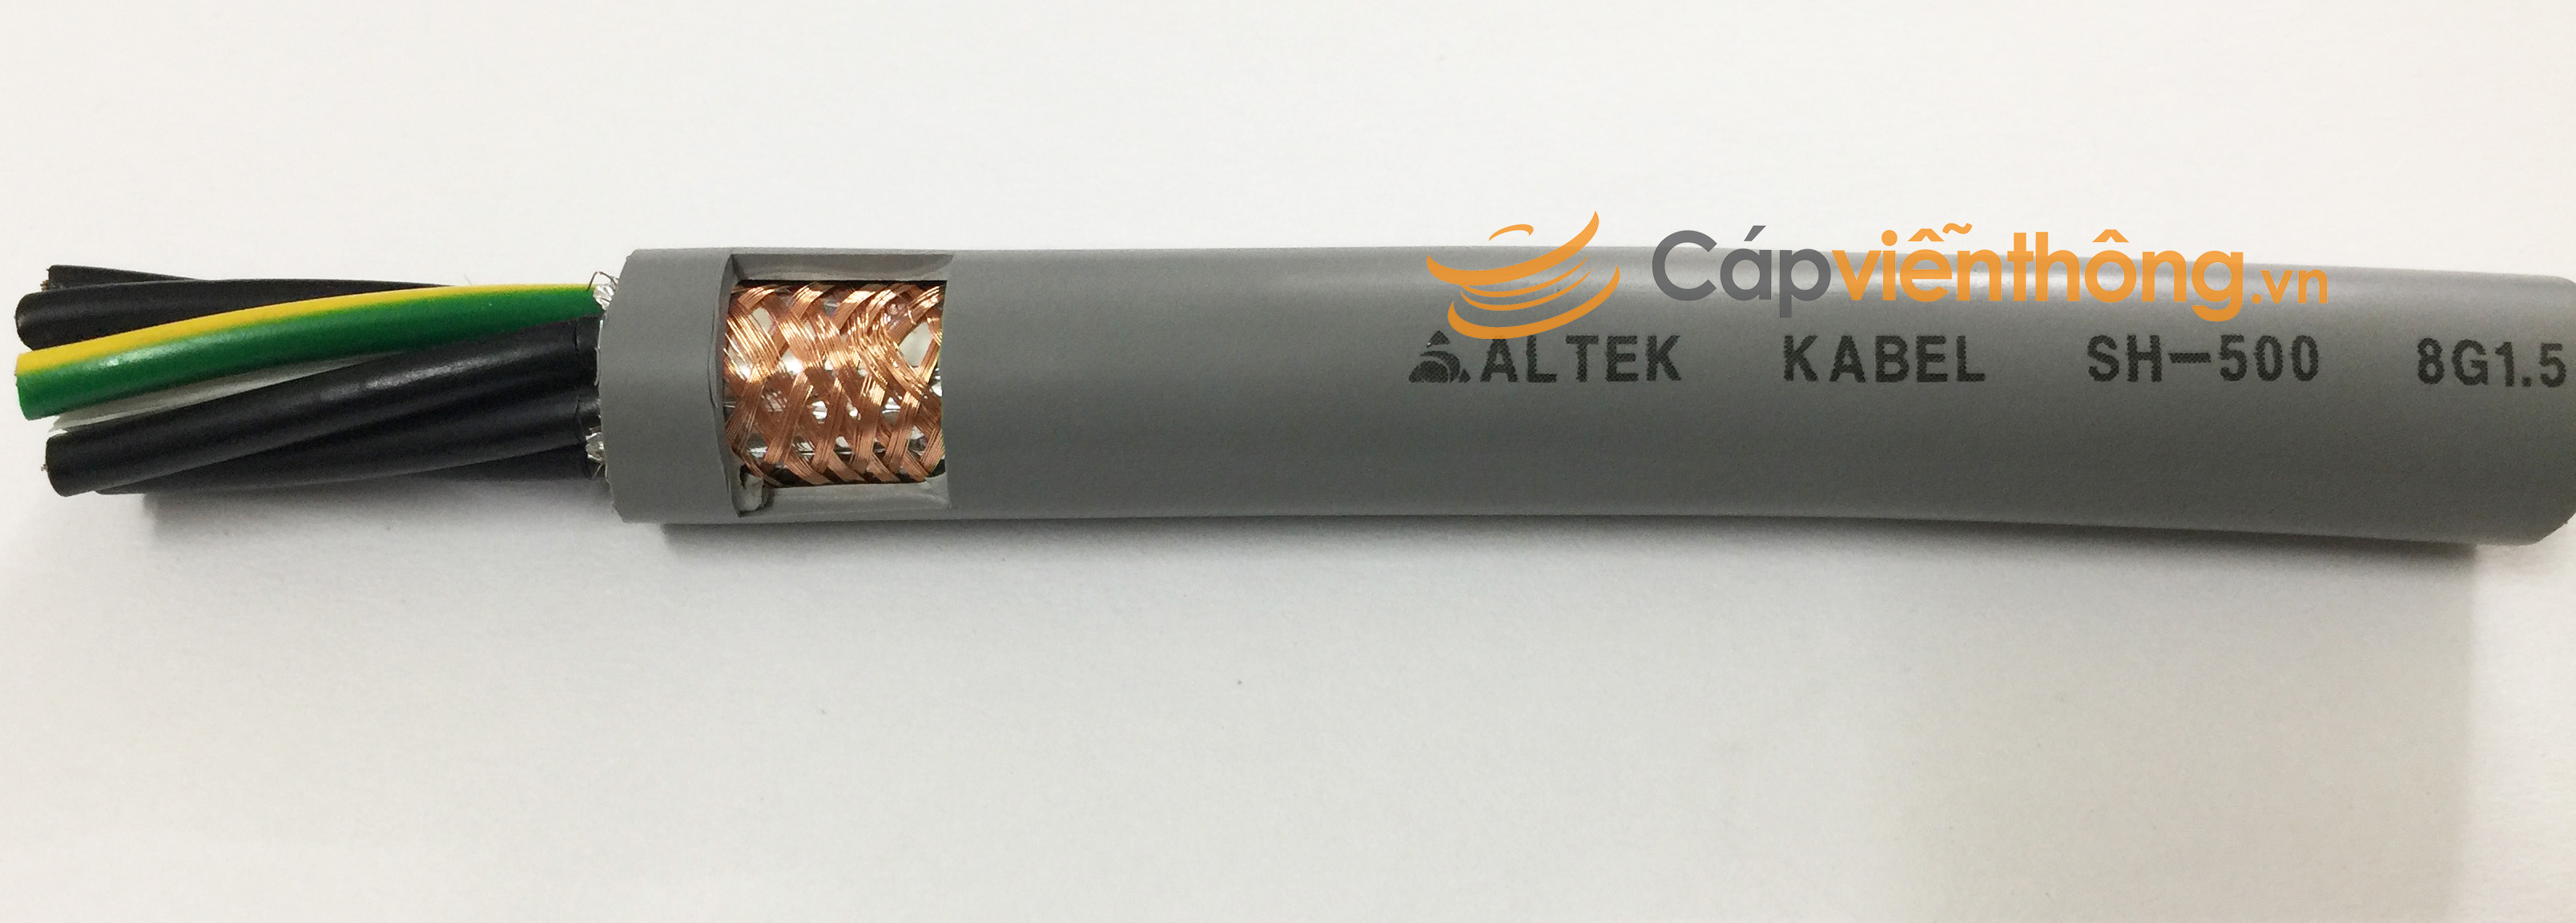 Cáp điều khiển có lưới Altek Kabel SH-500 8G 1.5QMM